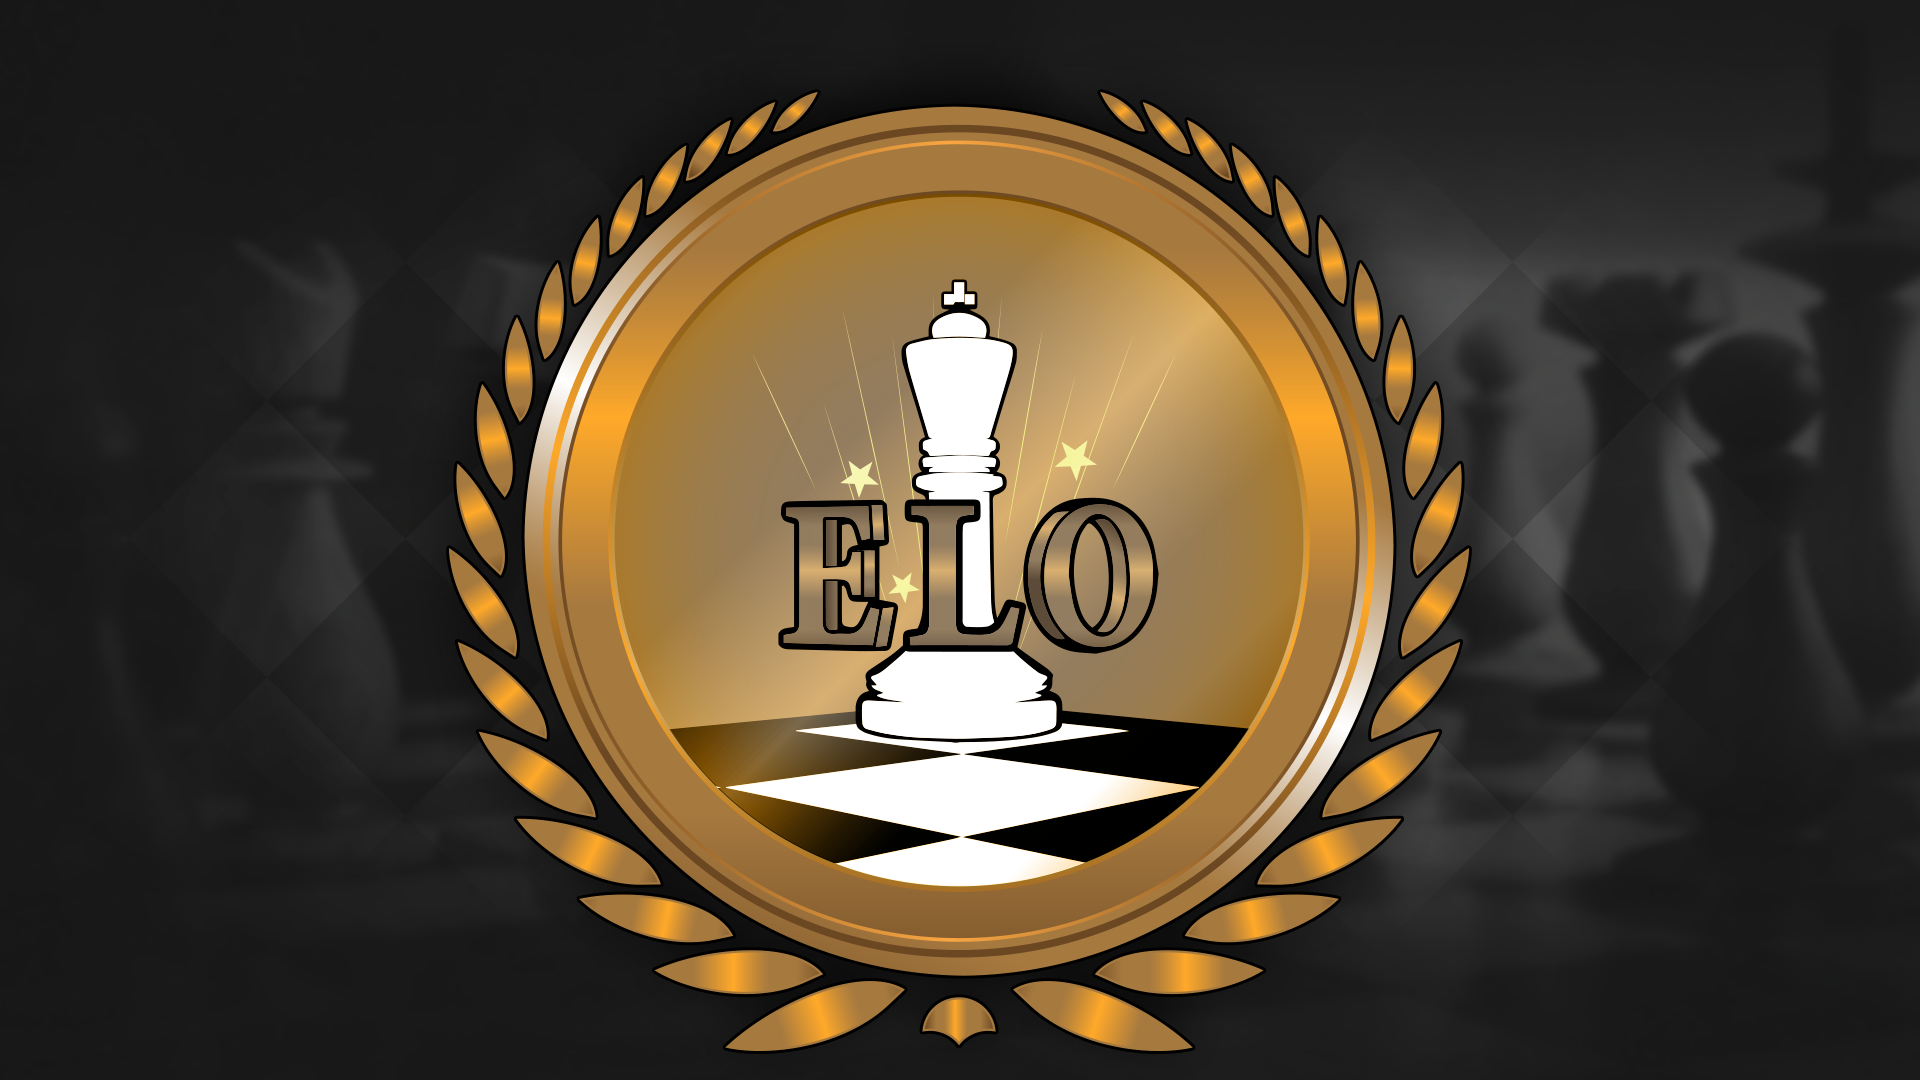 Icon for Elo Elo Elo